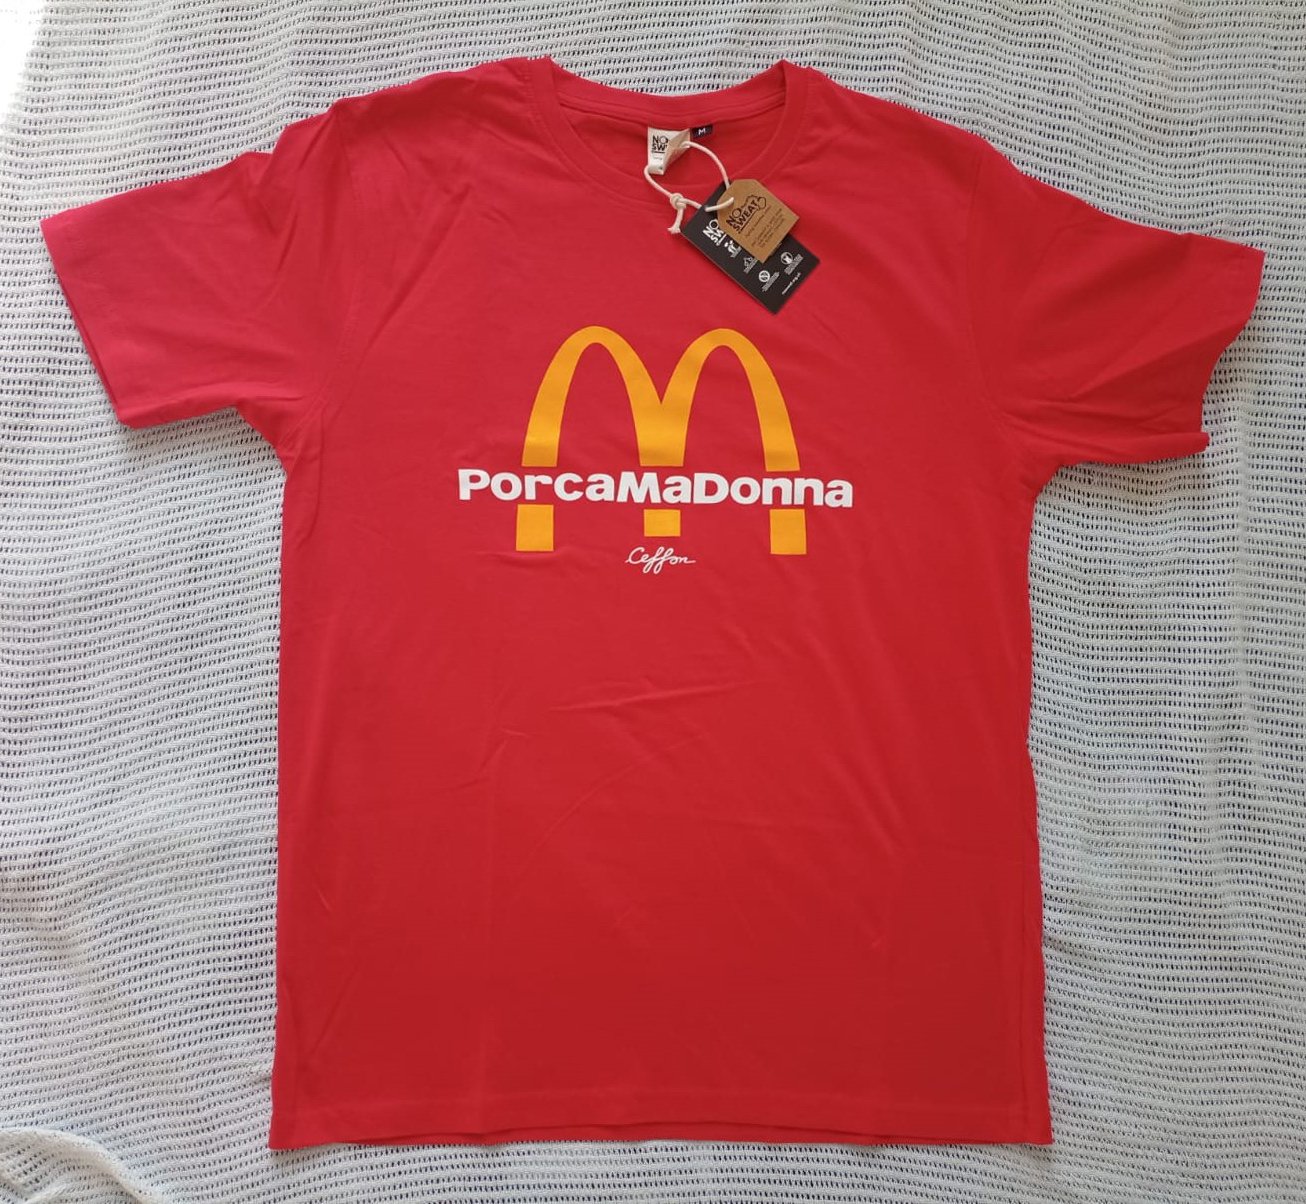 PORCAMADONNA (t-shirt)